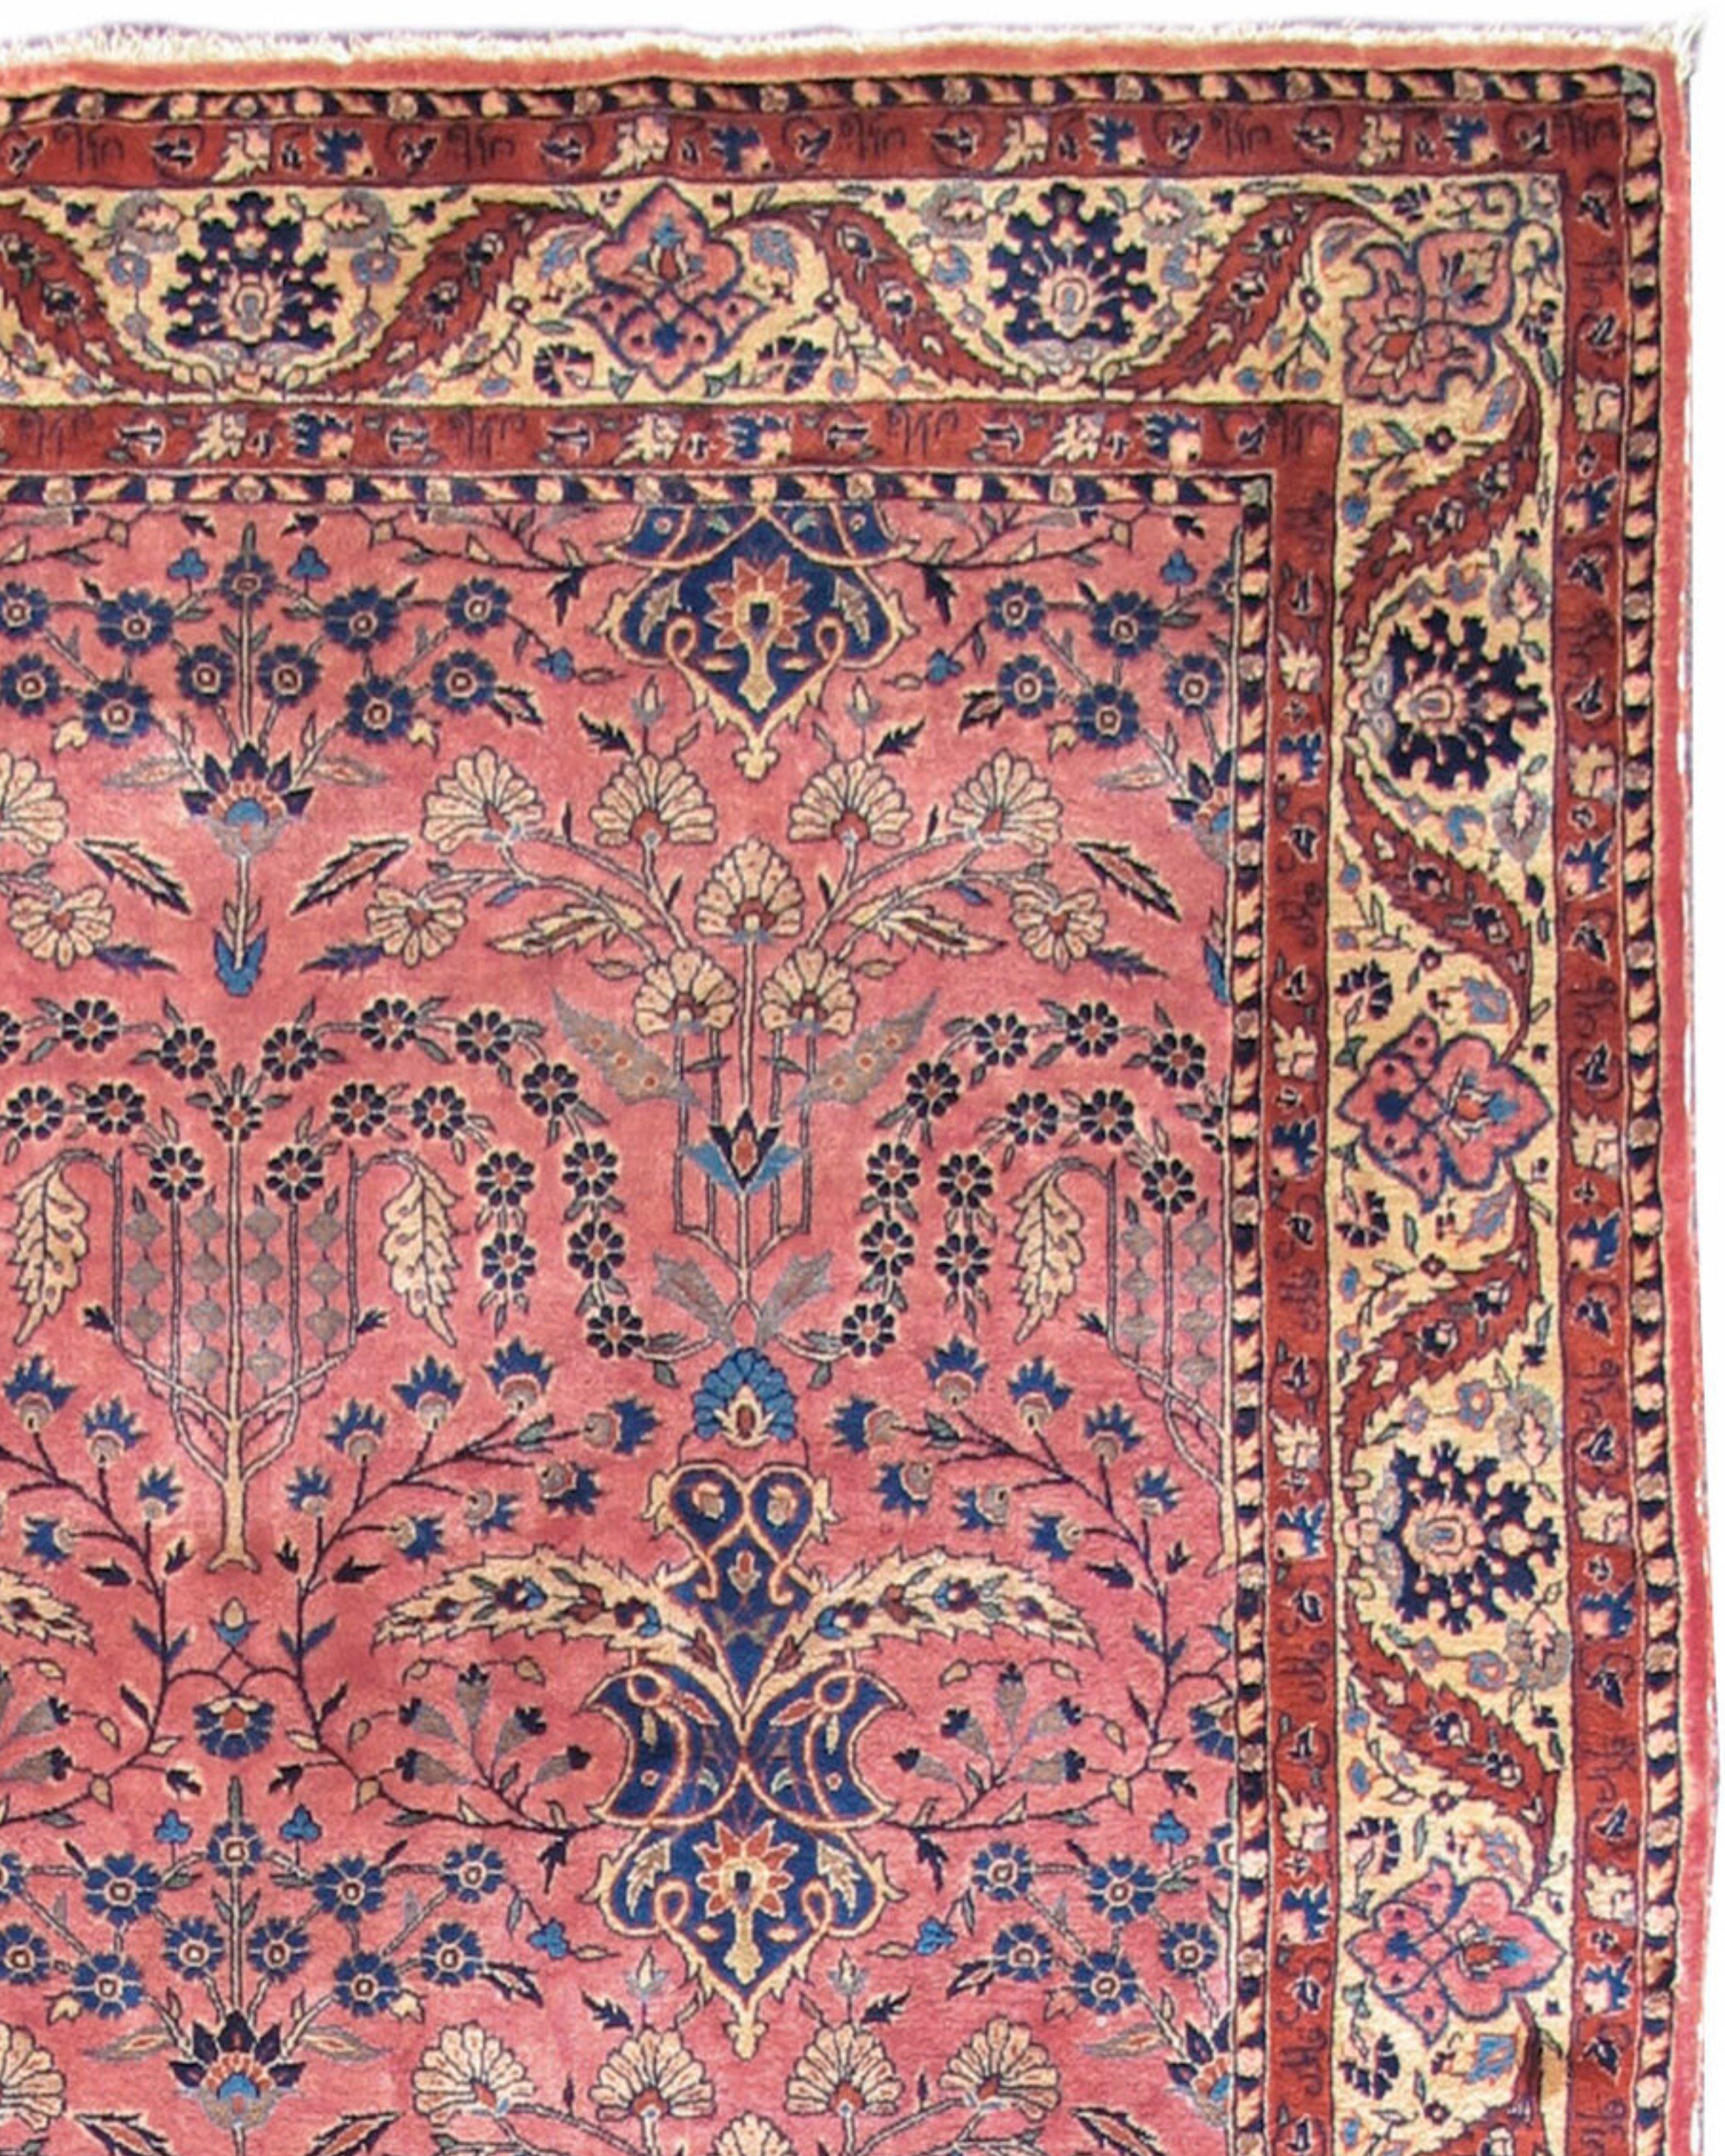 Ancien tapis persan Ghazan Sarouk, vers 1900

Tissé avec de la laine lustrée de Manchester, cet élégant tapis central persan Ghazan Sarouk dessine un champ floral stylisé sur un fond rose-rouge doux. Au début du XXe siècle, la palette de couleurs